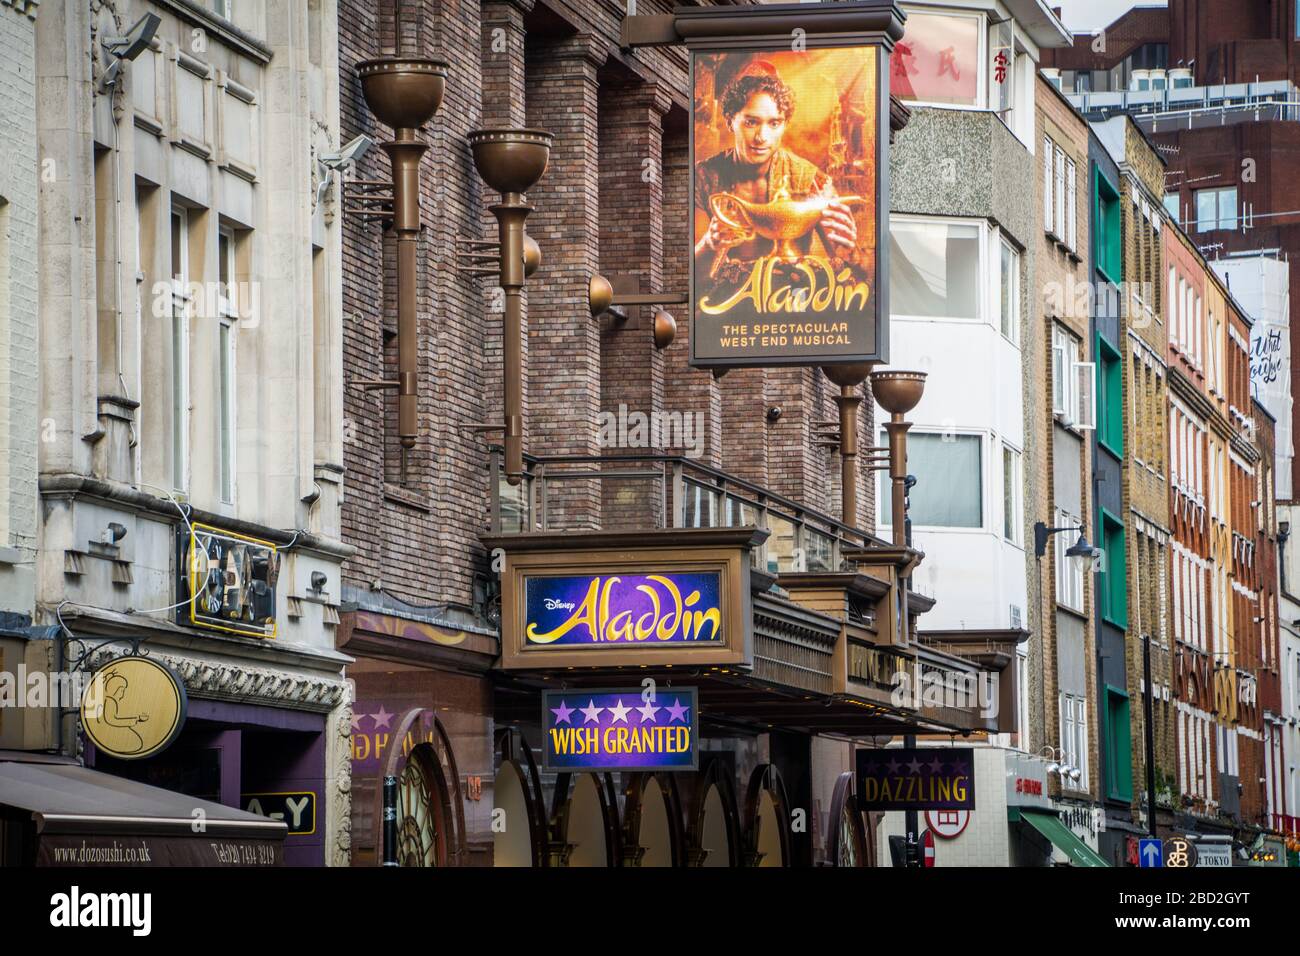 LONDRES- extérieur du théâtre du Prince-Édouard montrant Aladdin. Une comédie musicale populaire dans le West End de Londres Banque D'Images